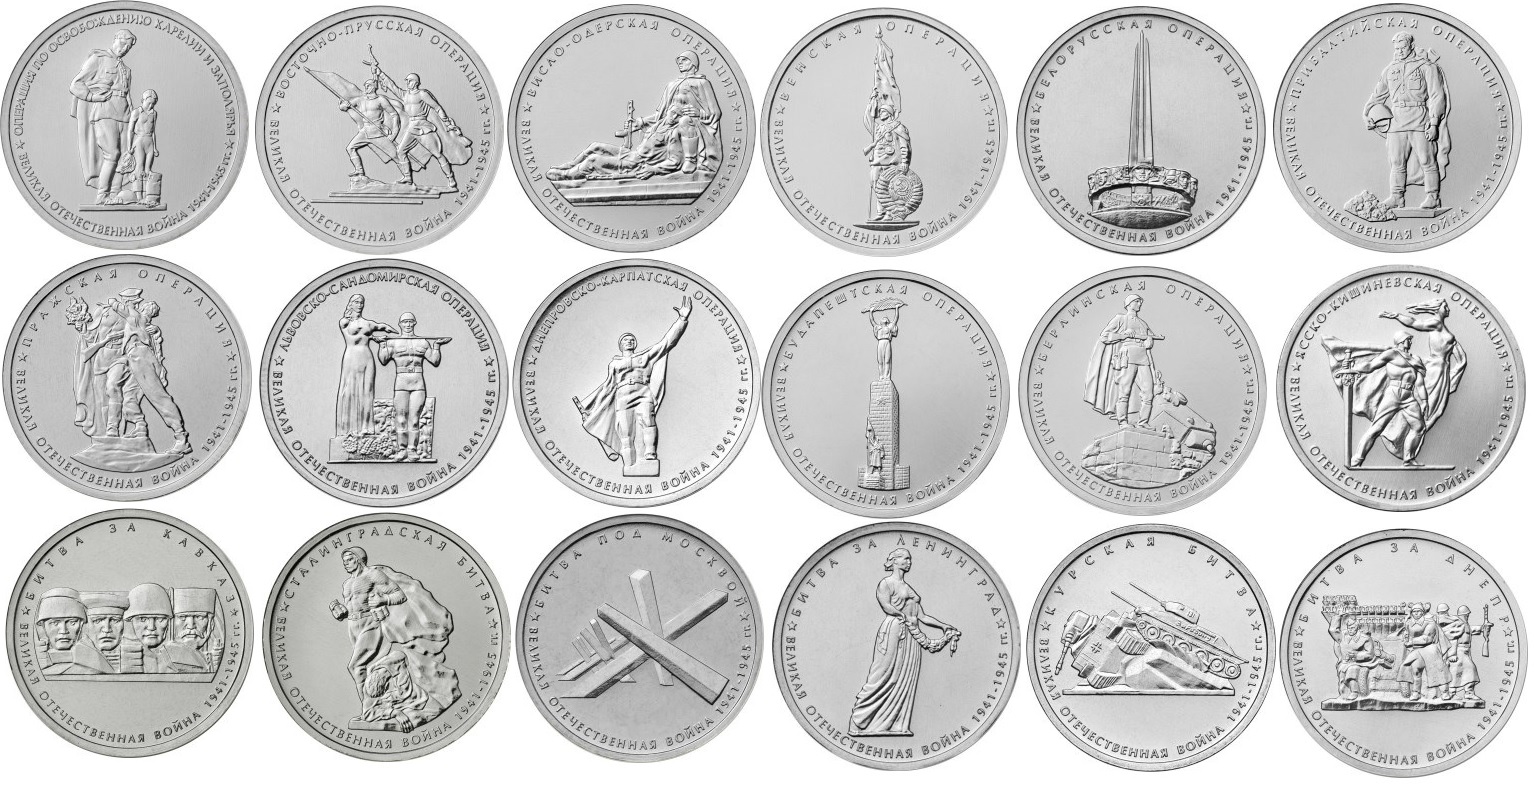 Монета 5 рублей 2014